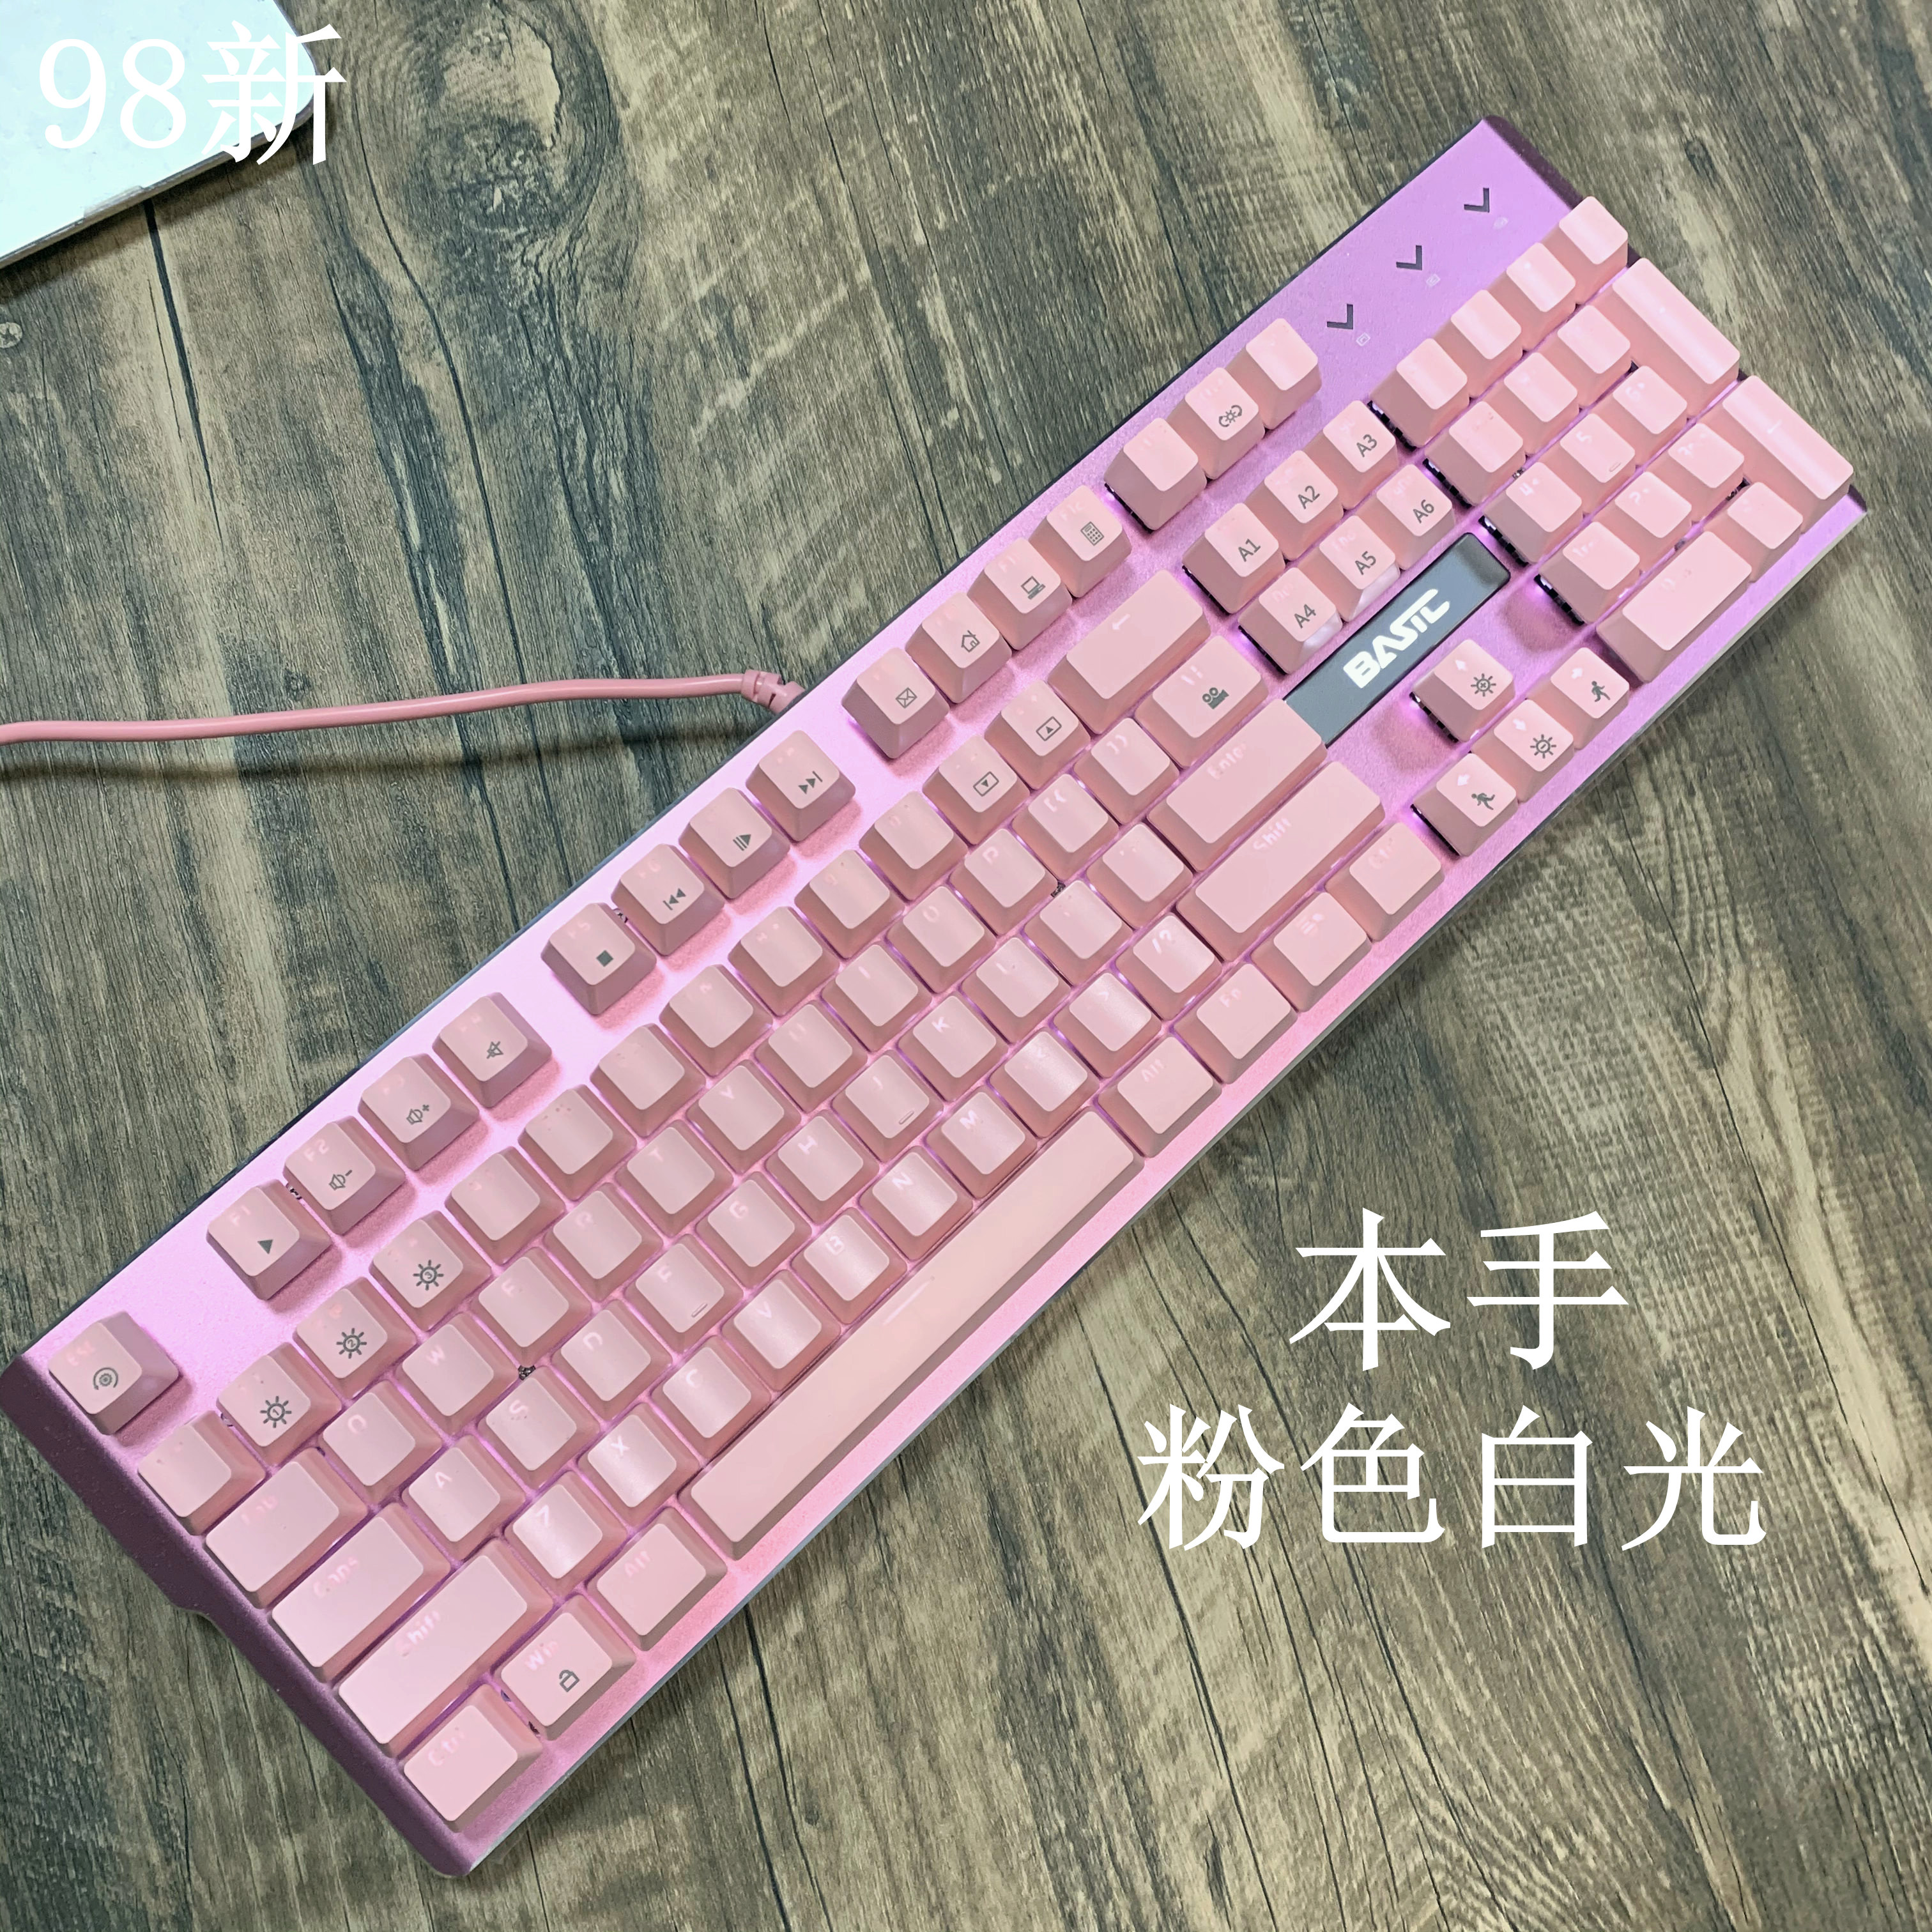 粉色104键真机械键盘烽影星月RGB月刃彩色键盘粉色白色青轴黑轴